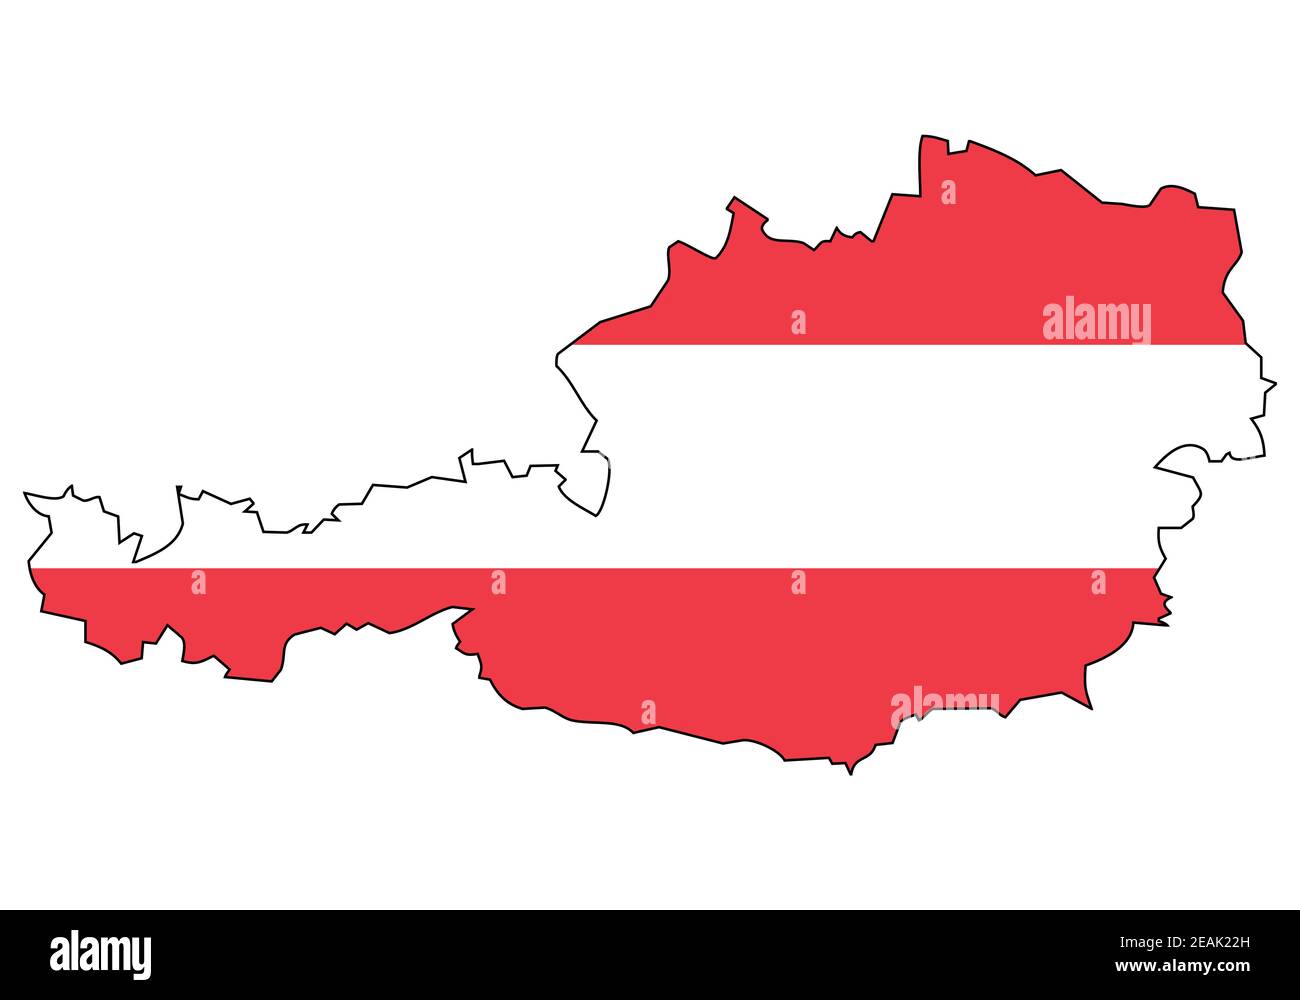 Österreich Karte mit Flagge - Umriss eines Staates mit Nationalflagge, weißer Hintergrund, Vektor Stock Vektor